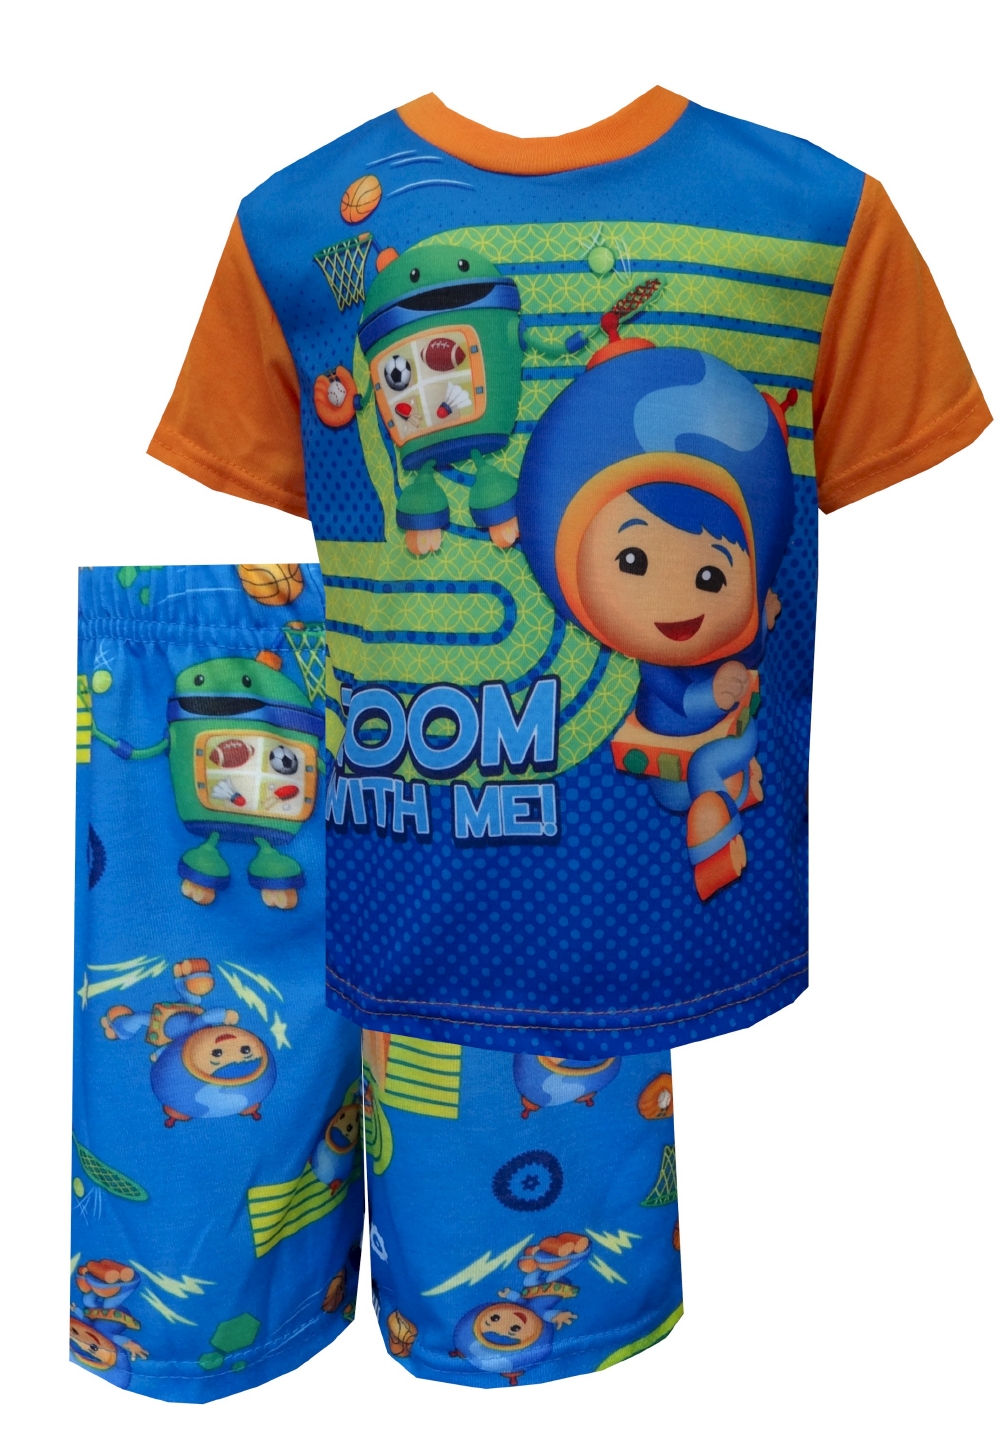 WebUndies.com Nickelodeon Team Umizoomi Zoom With Me Toddler Pajamas